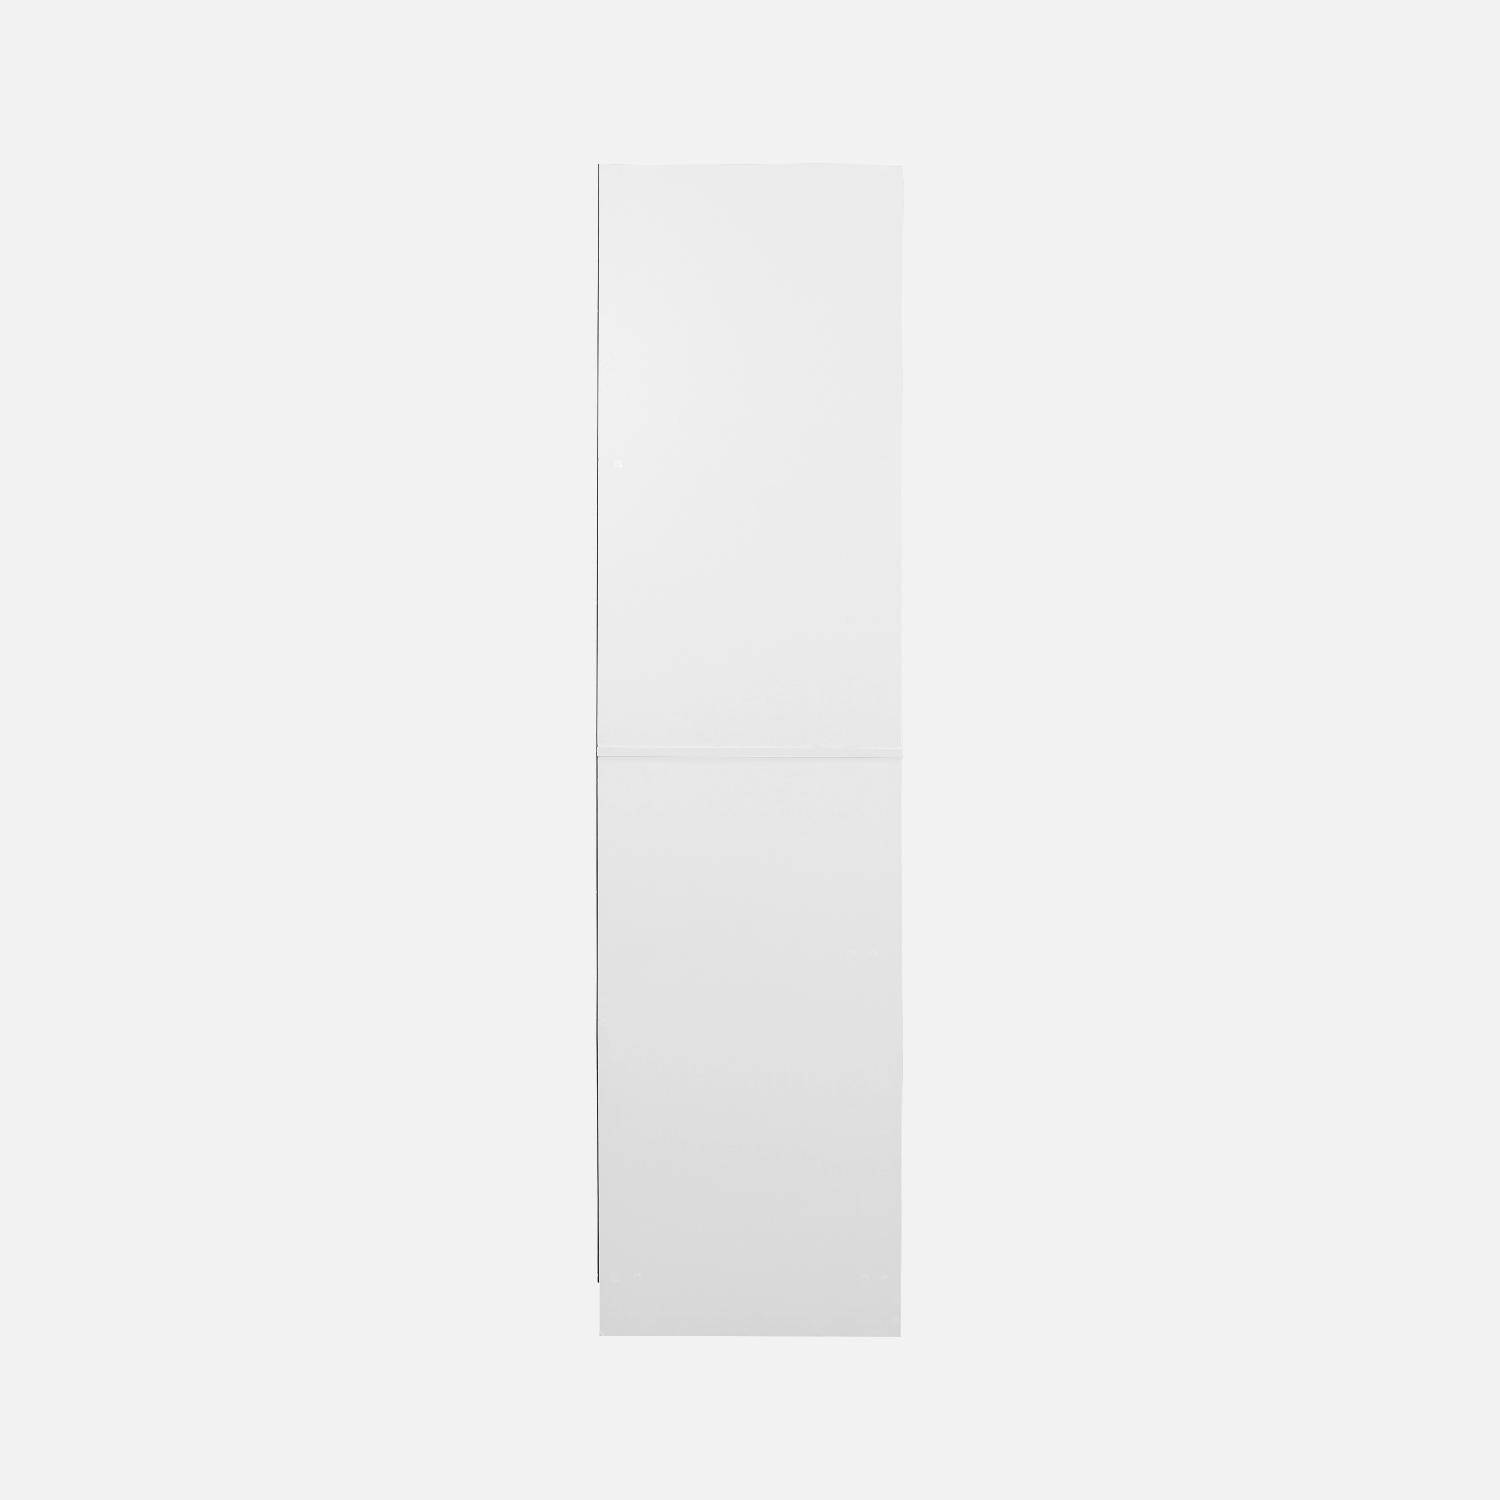 Kledingkastmodule met 5 lades en 2 legplanken, wit, gelamineerde panelen Photo7